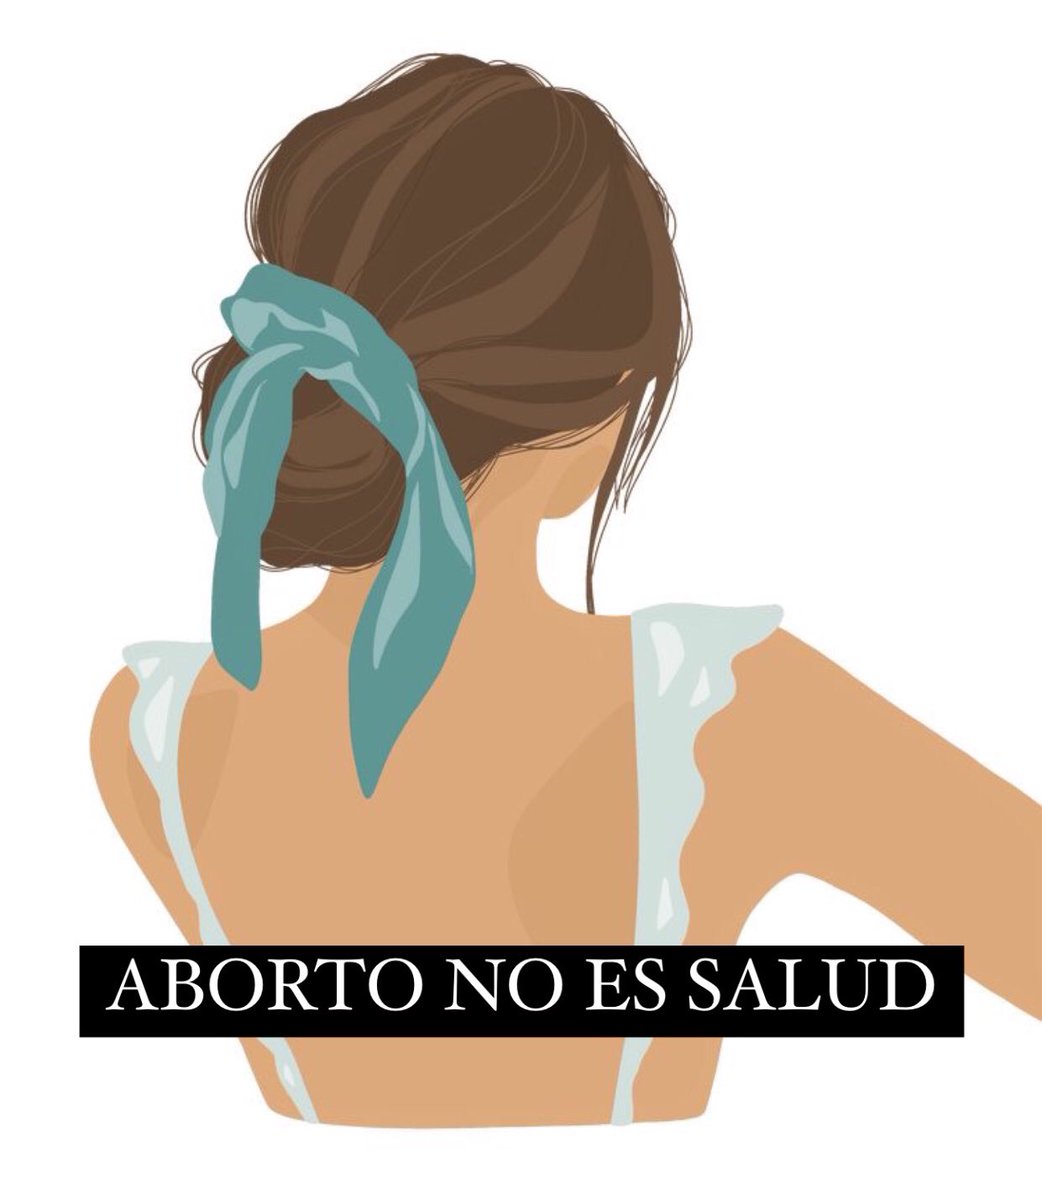 Hoy, 28 de mayo, es el Día Internacional de Acción por la Salud de las Mujeres. Por eso, hoy más que nunca, es fundamental recordar que #AbortoNoEsSalud.